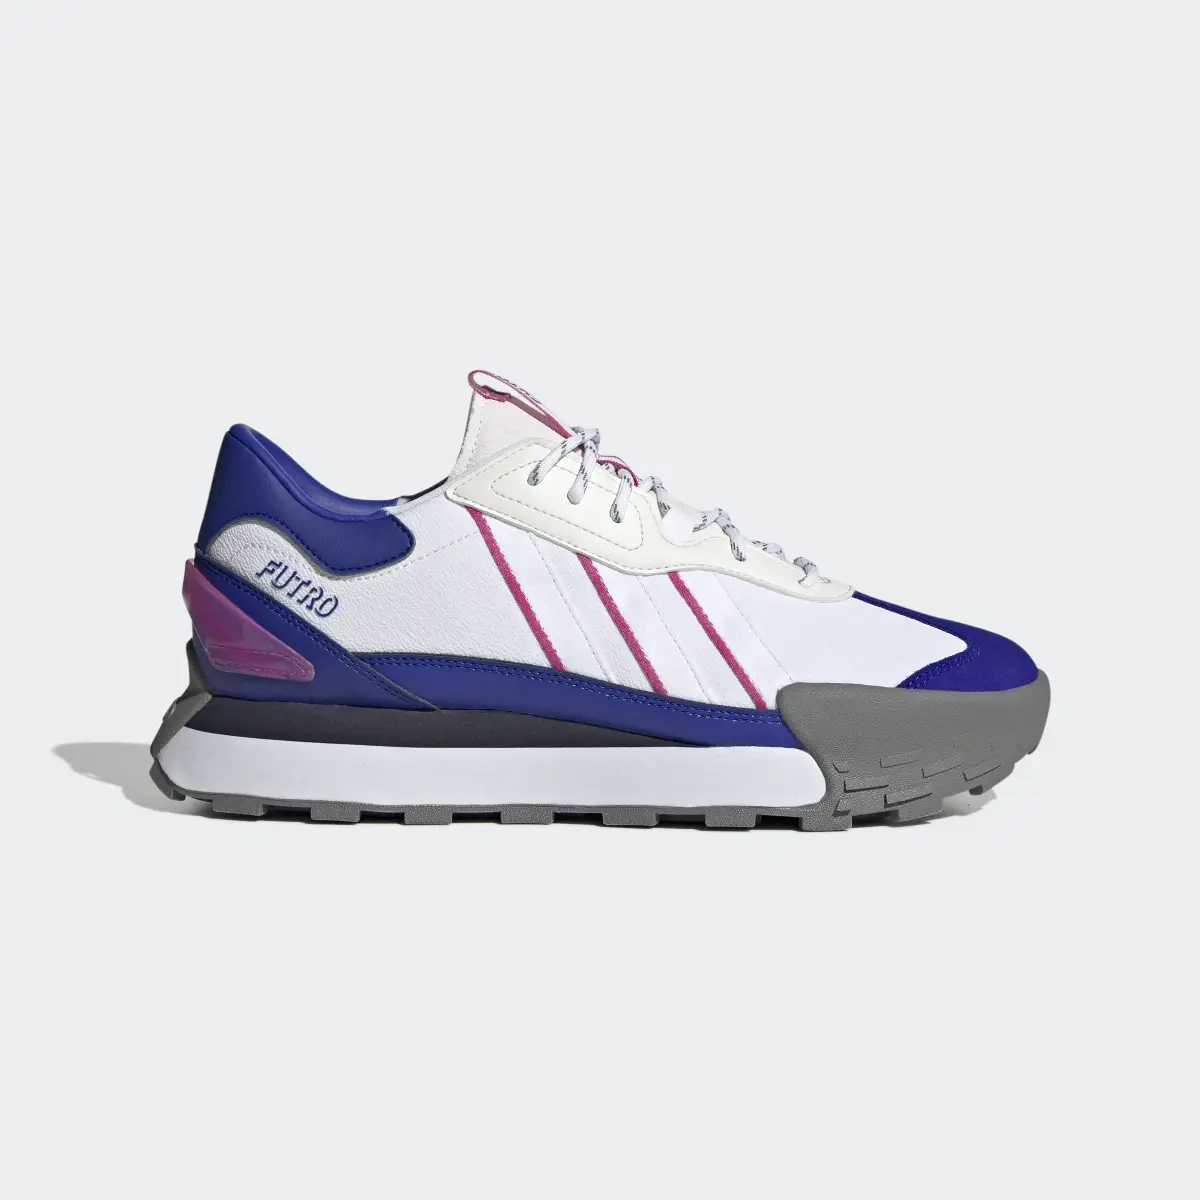 Adidas Futro Mixr Shoes. 2